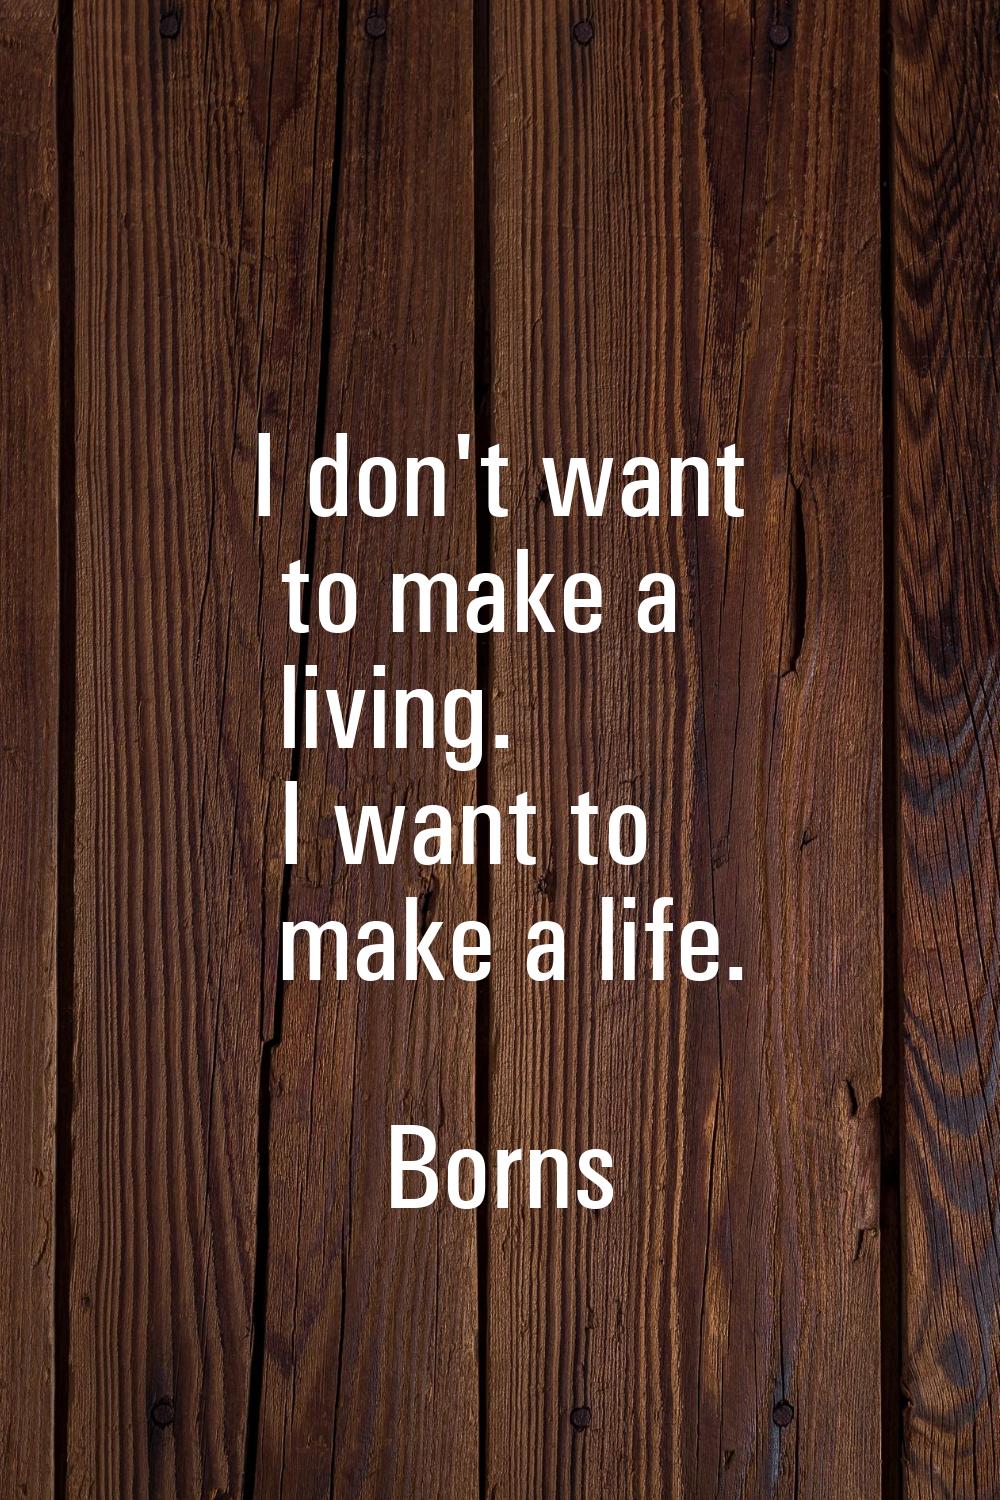 I don't want to make a living. I want to make a life.